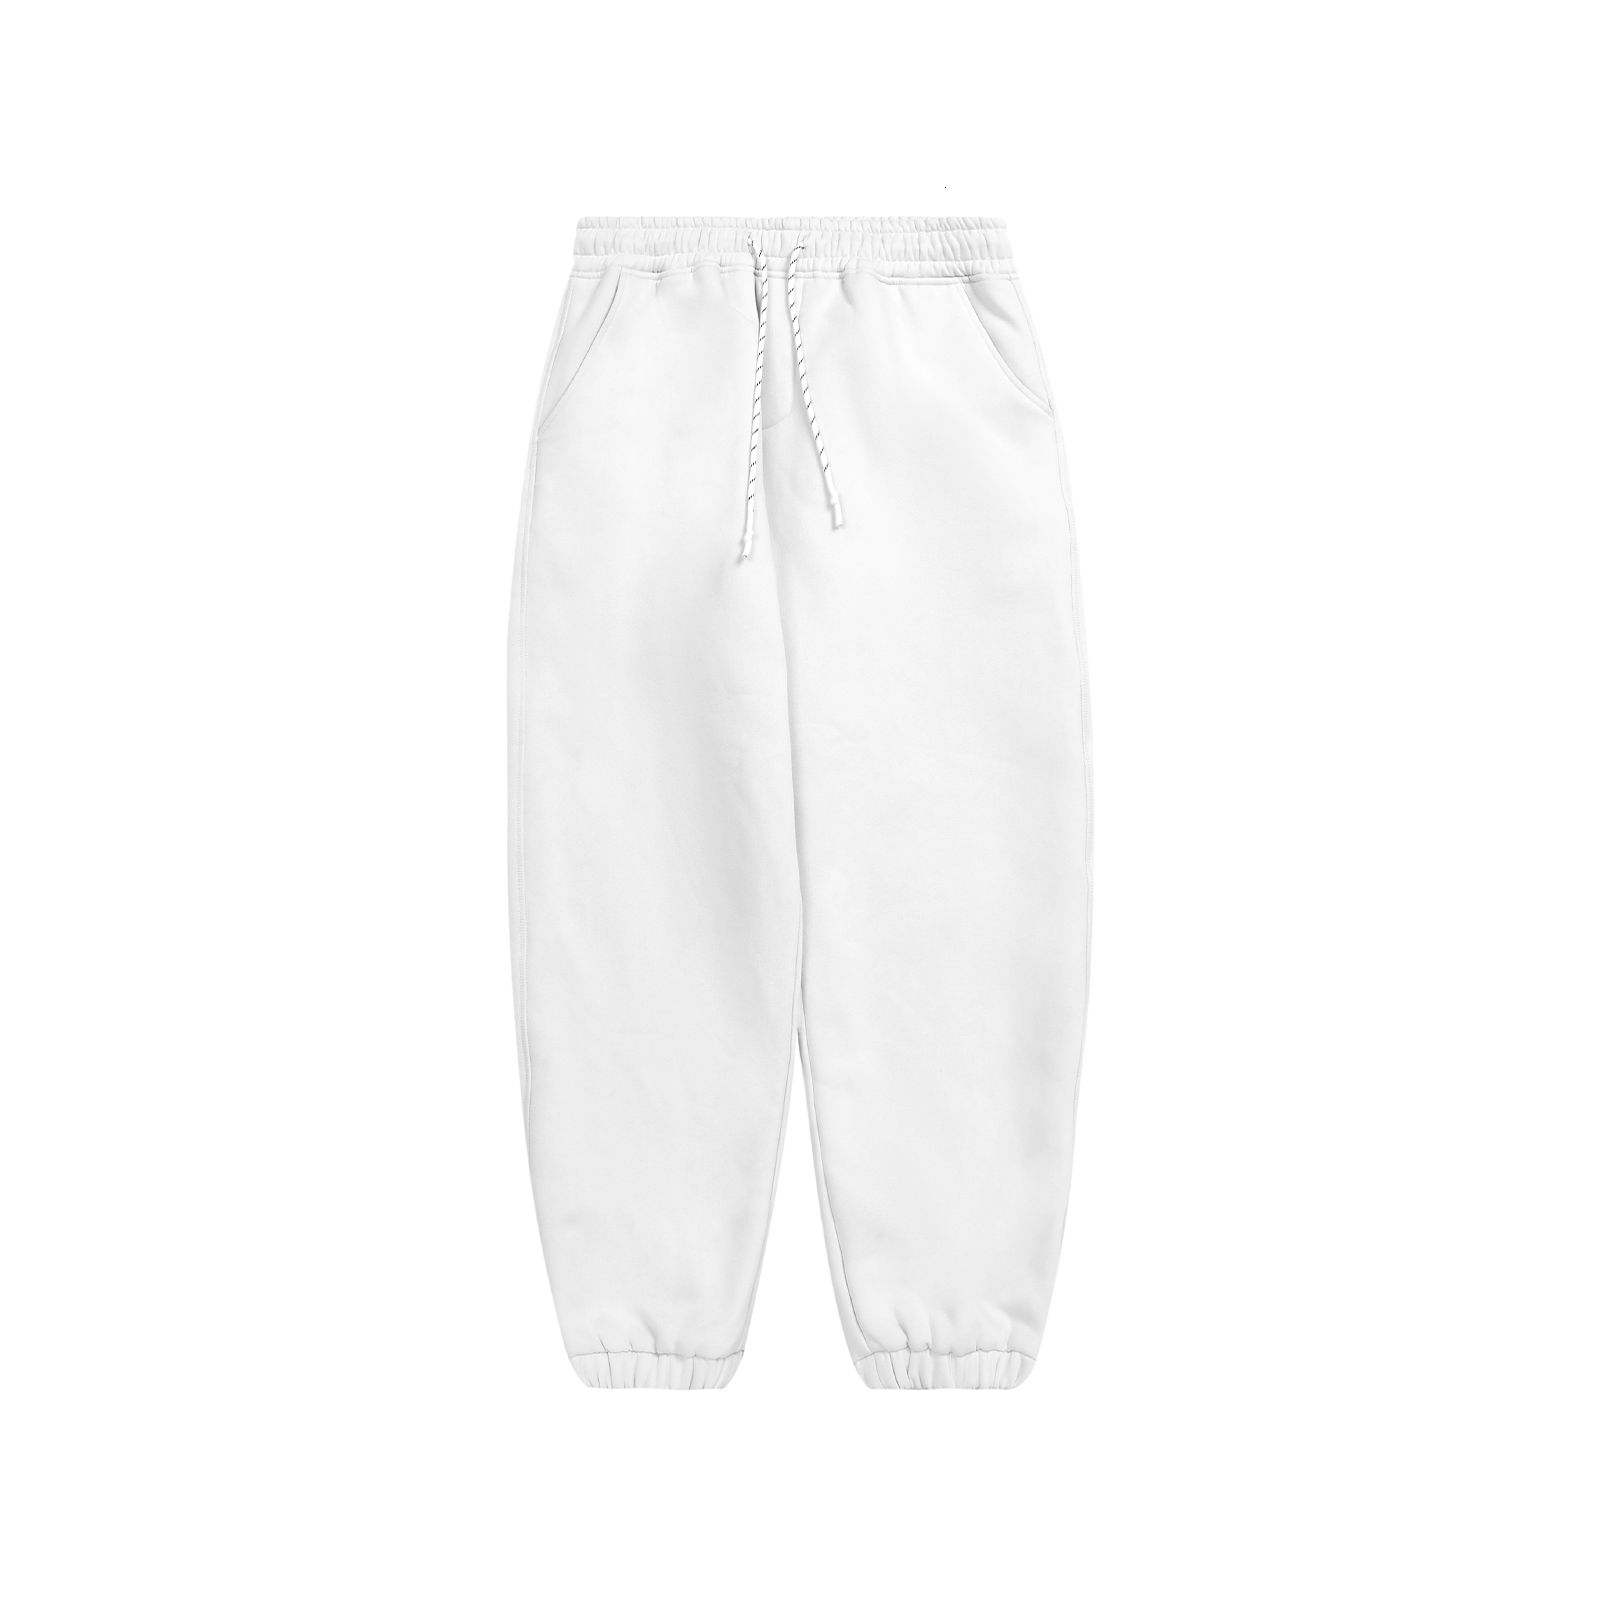 (pantalon) blanc